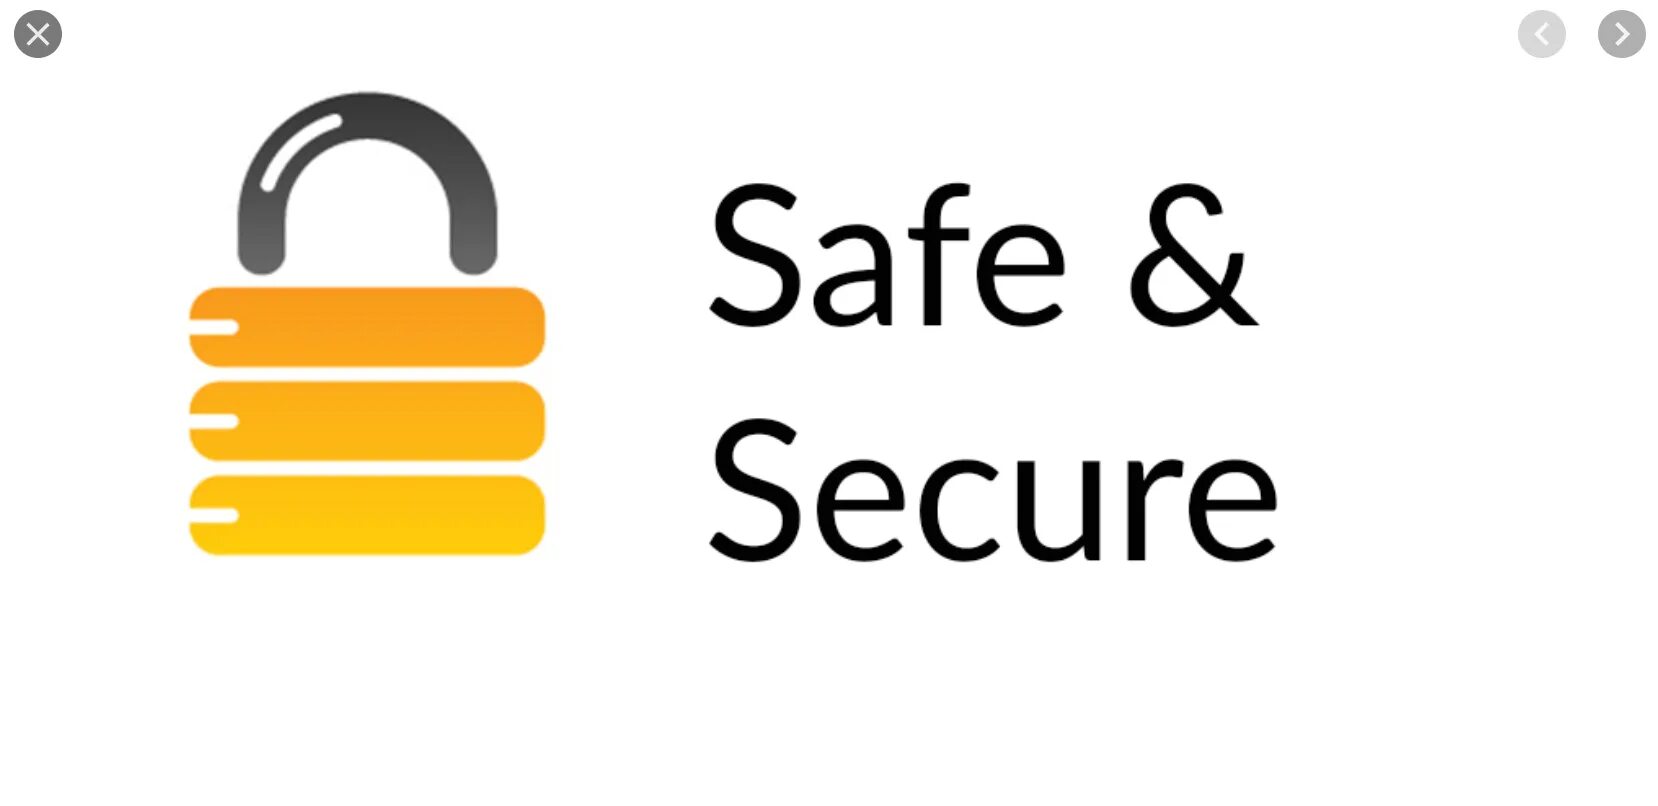 Safe and secure. Secure. Safe Security. Safe безопасный. Safe безопасно.